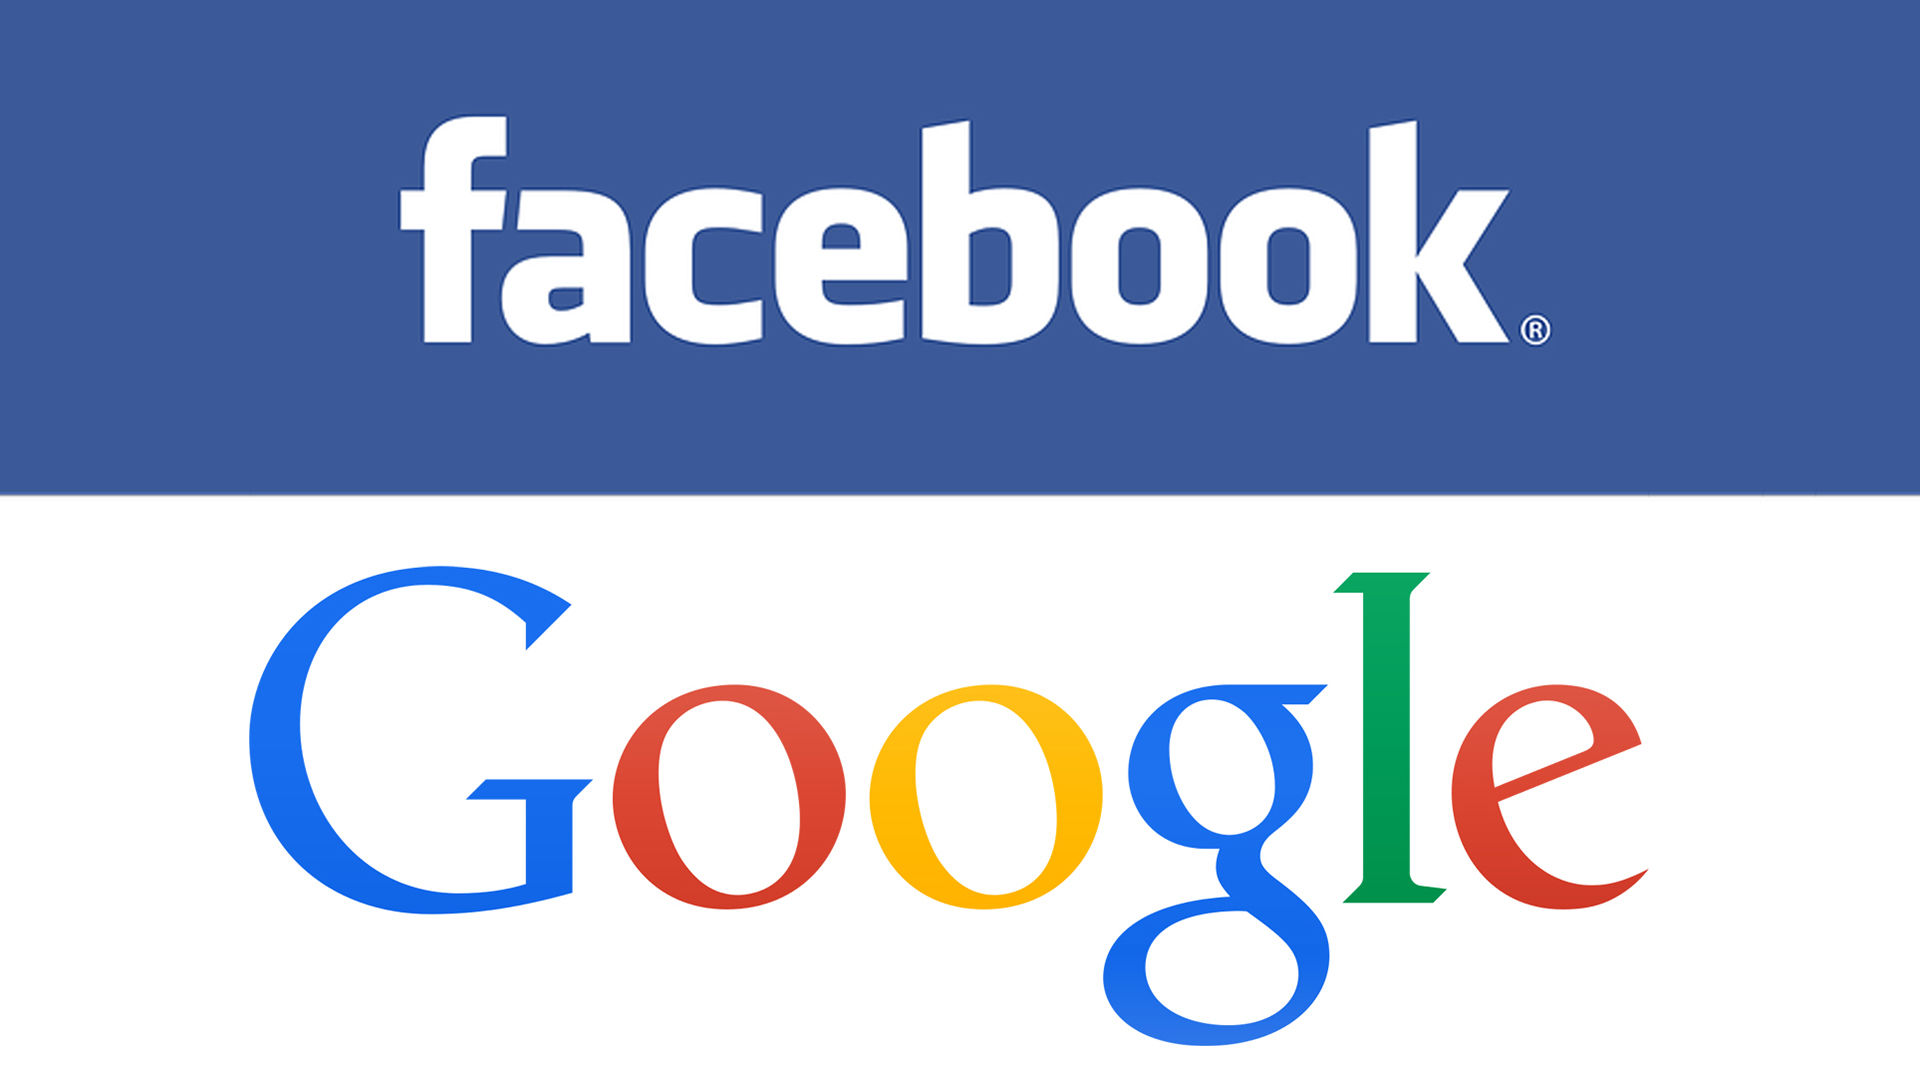 สื่อออสเตรเลีย Nine Entertainment เซ็นสัญญาจัดหาเนื้อหาให้ Facebook Google ตามกฎหมาย